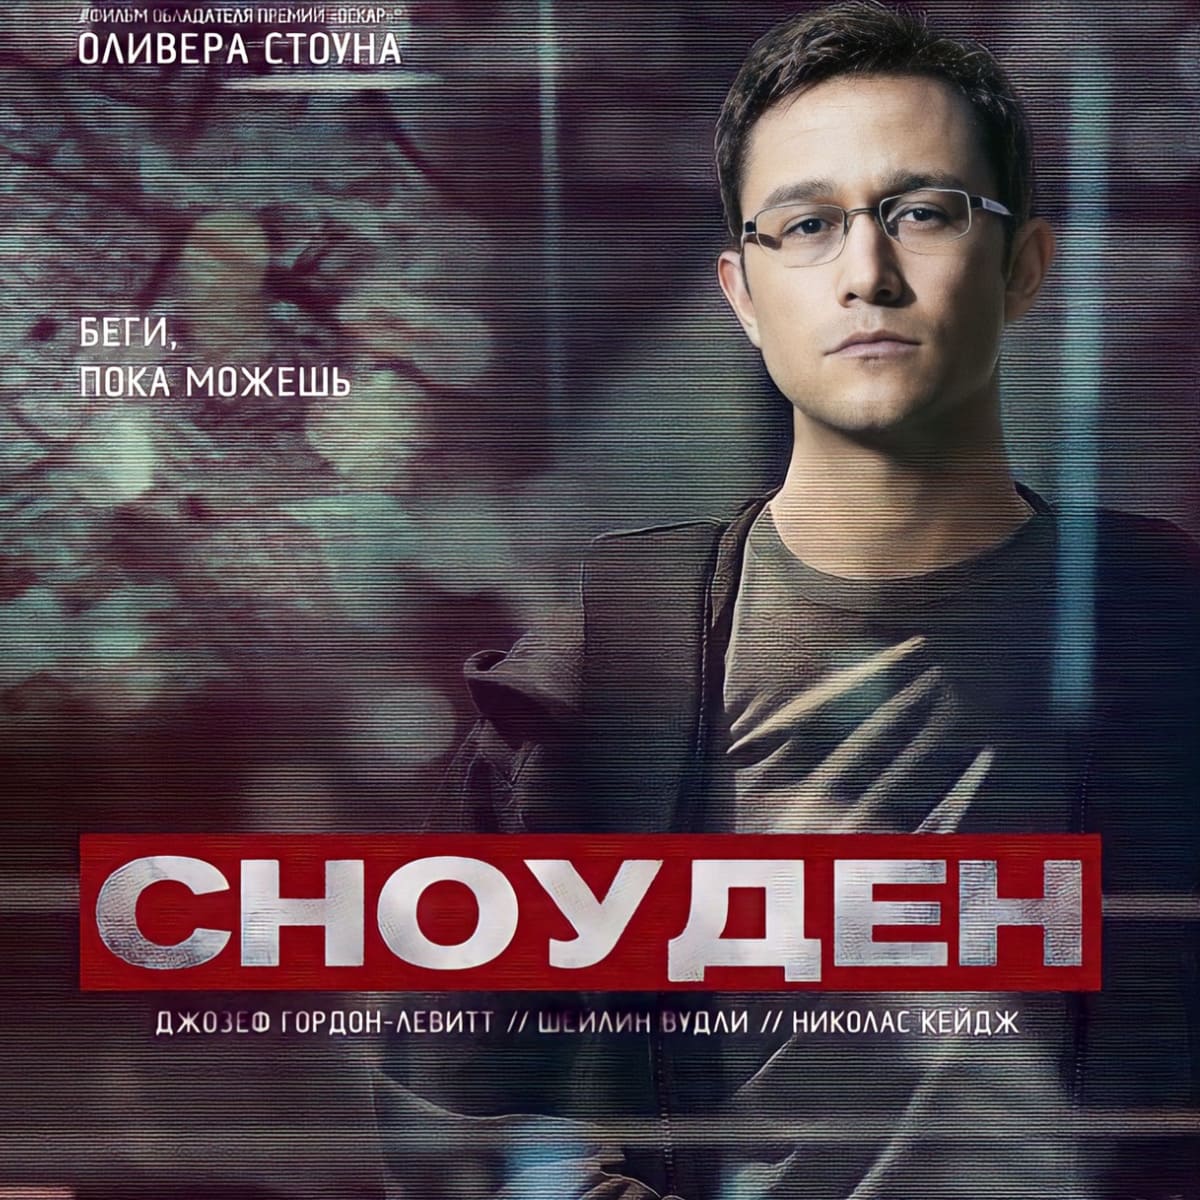 La película "Snowden